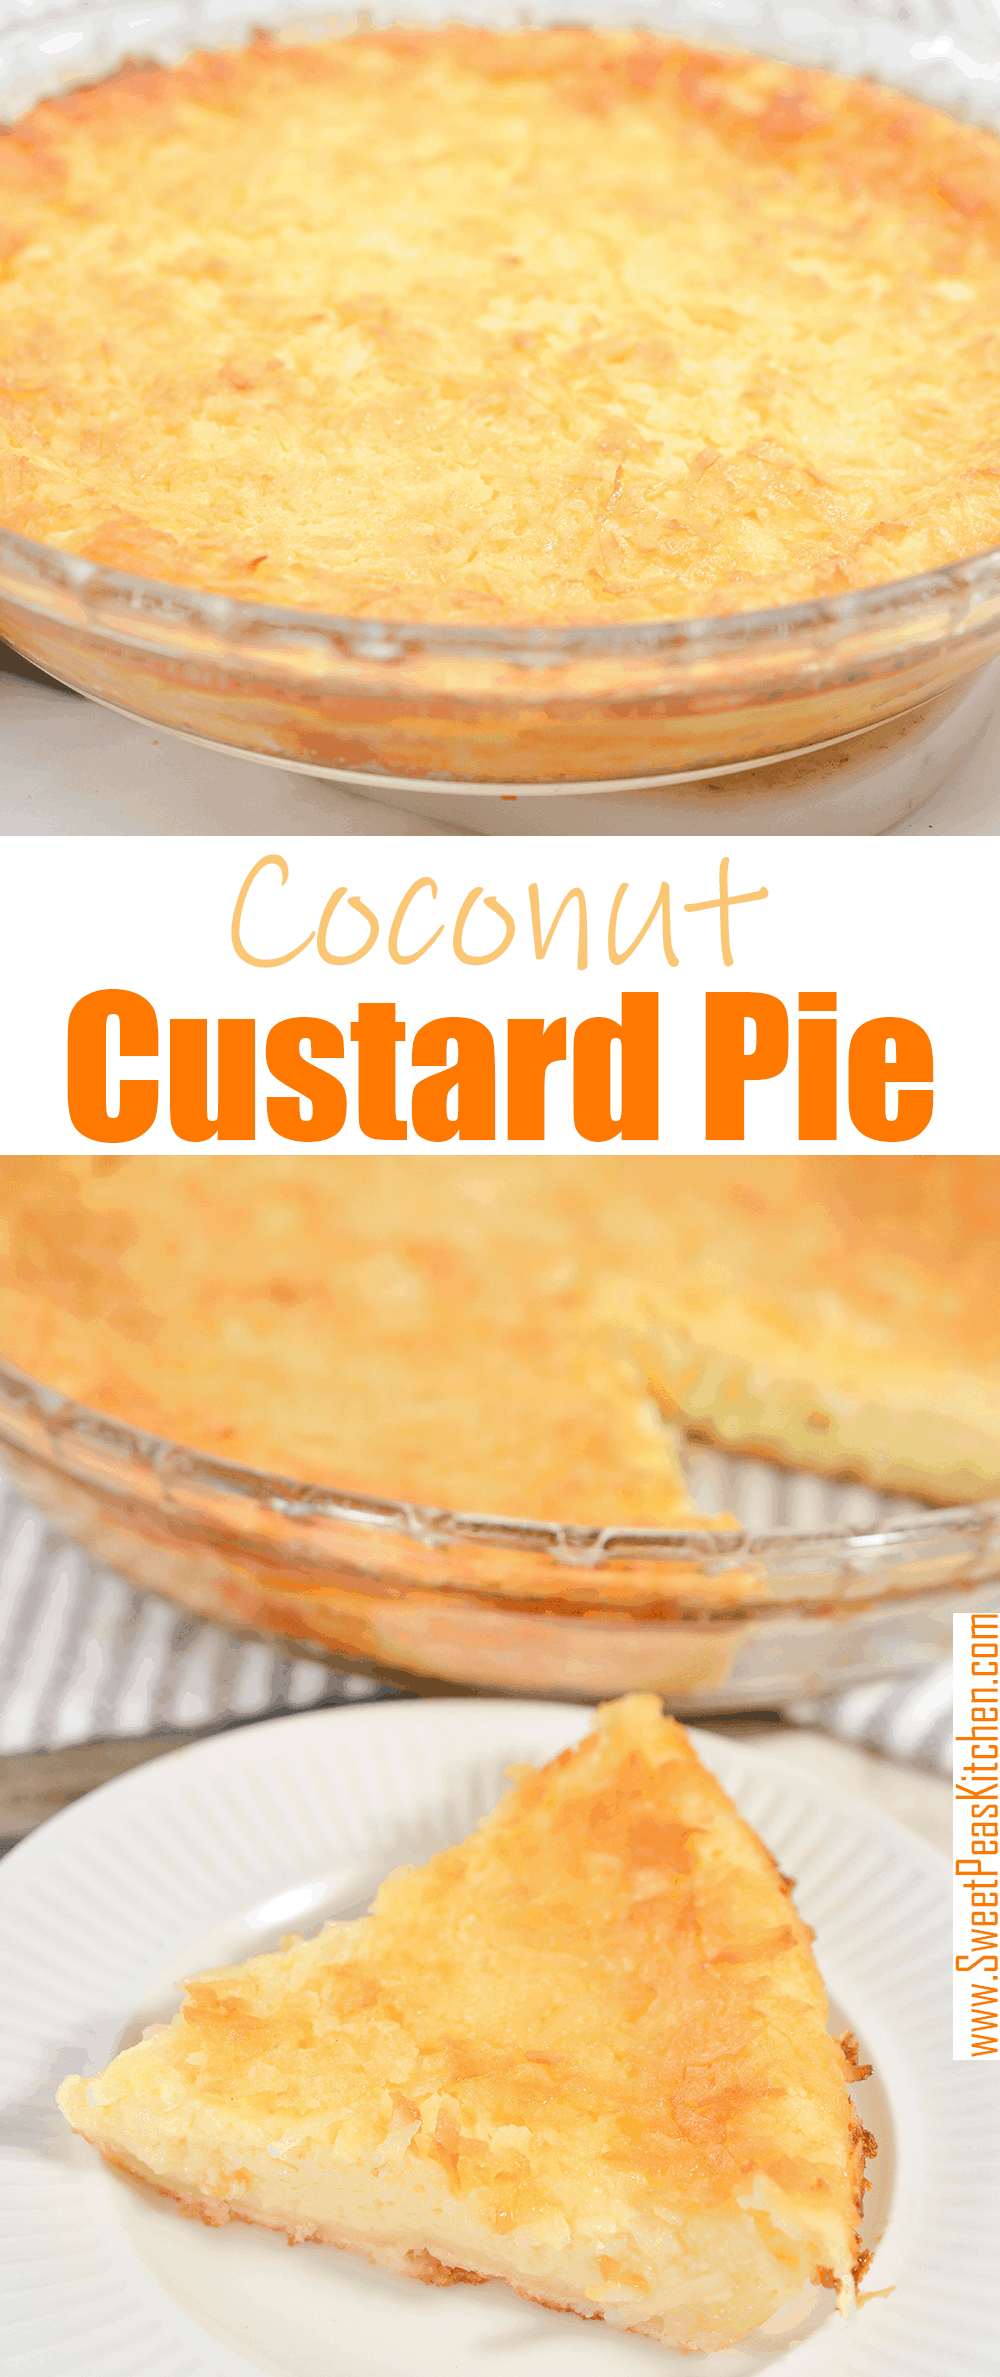 Coconut Custard Pie on Pinterest